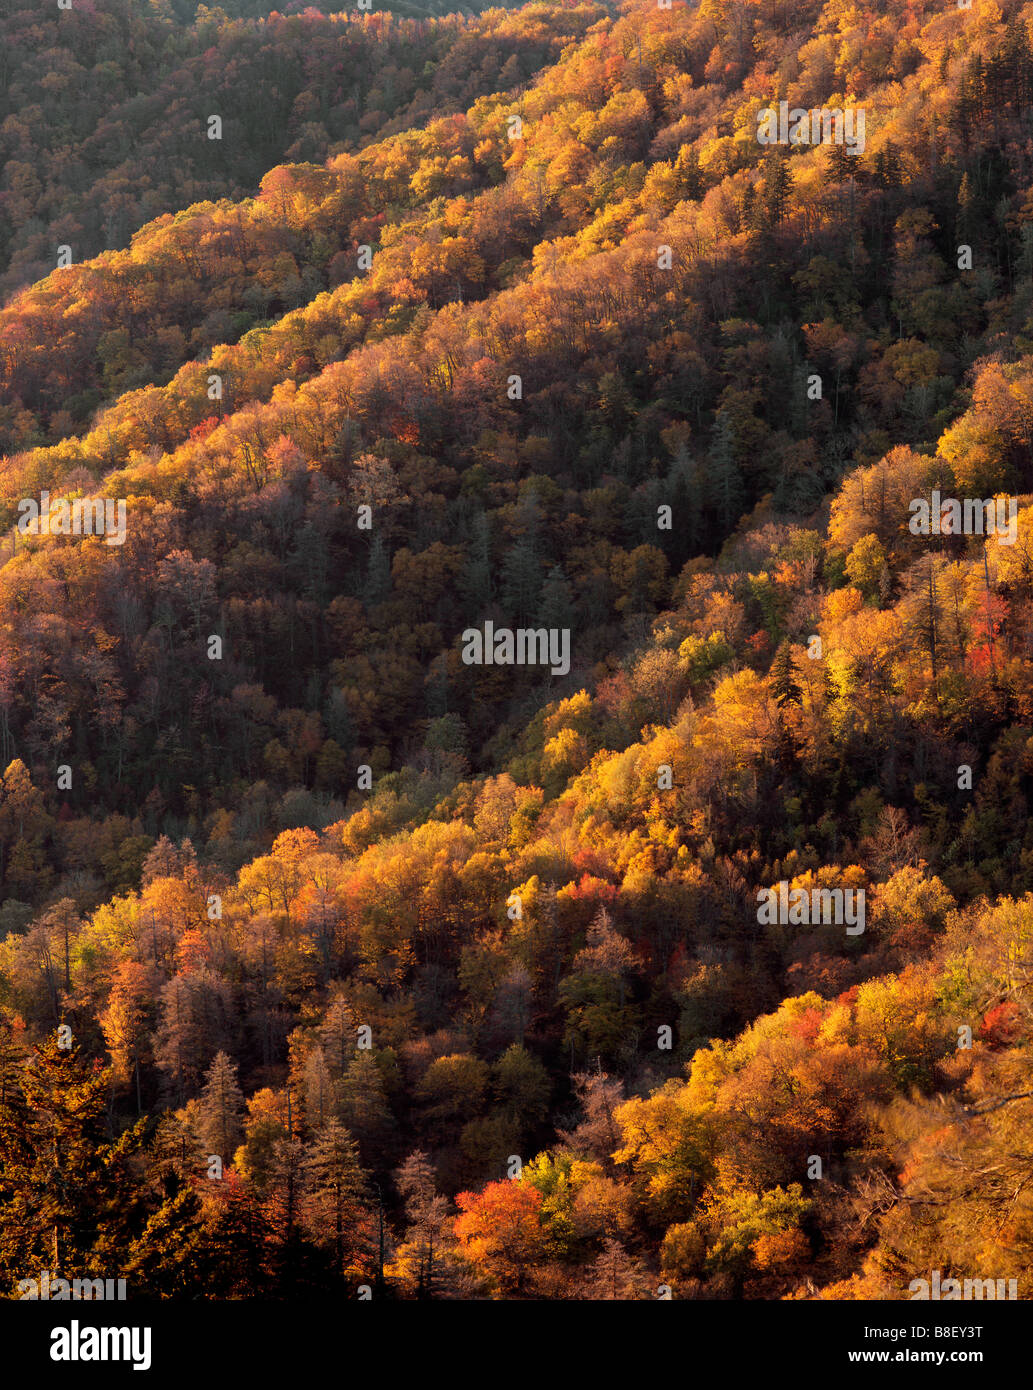 VerticalNORTH - Caroline la couleur de l'automne le long de Newfound Gap Road dans le Great Smoky Mountains National Park. Banque D'Images